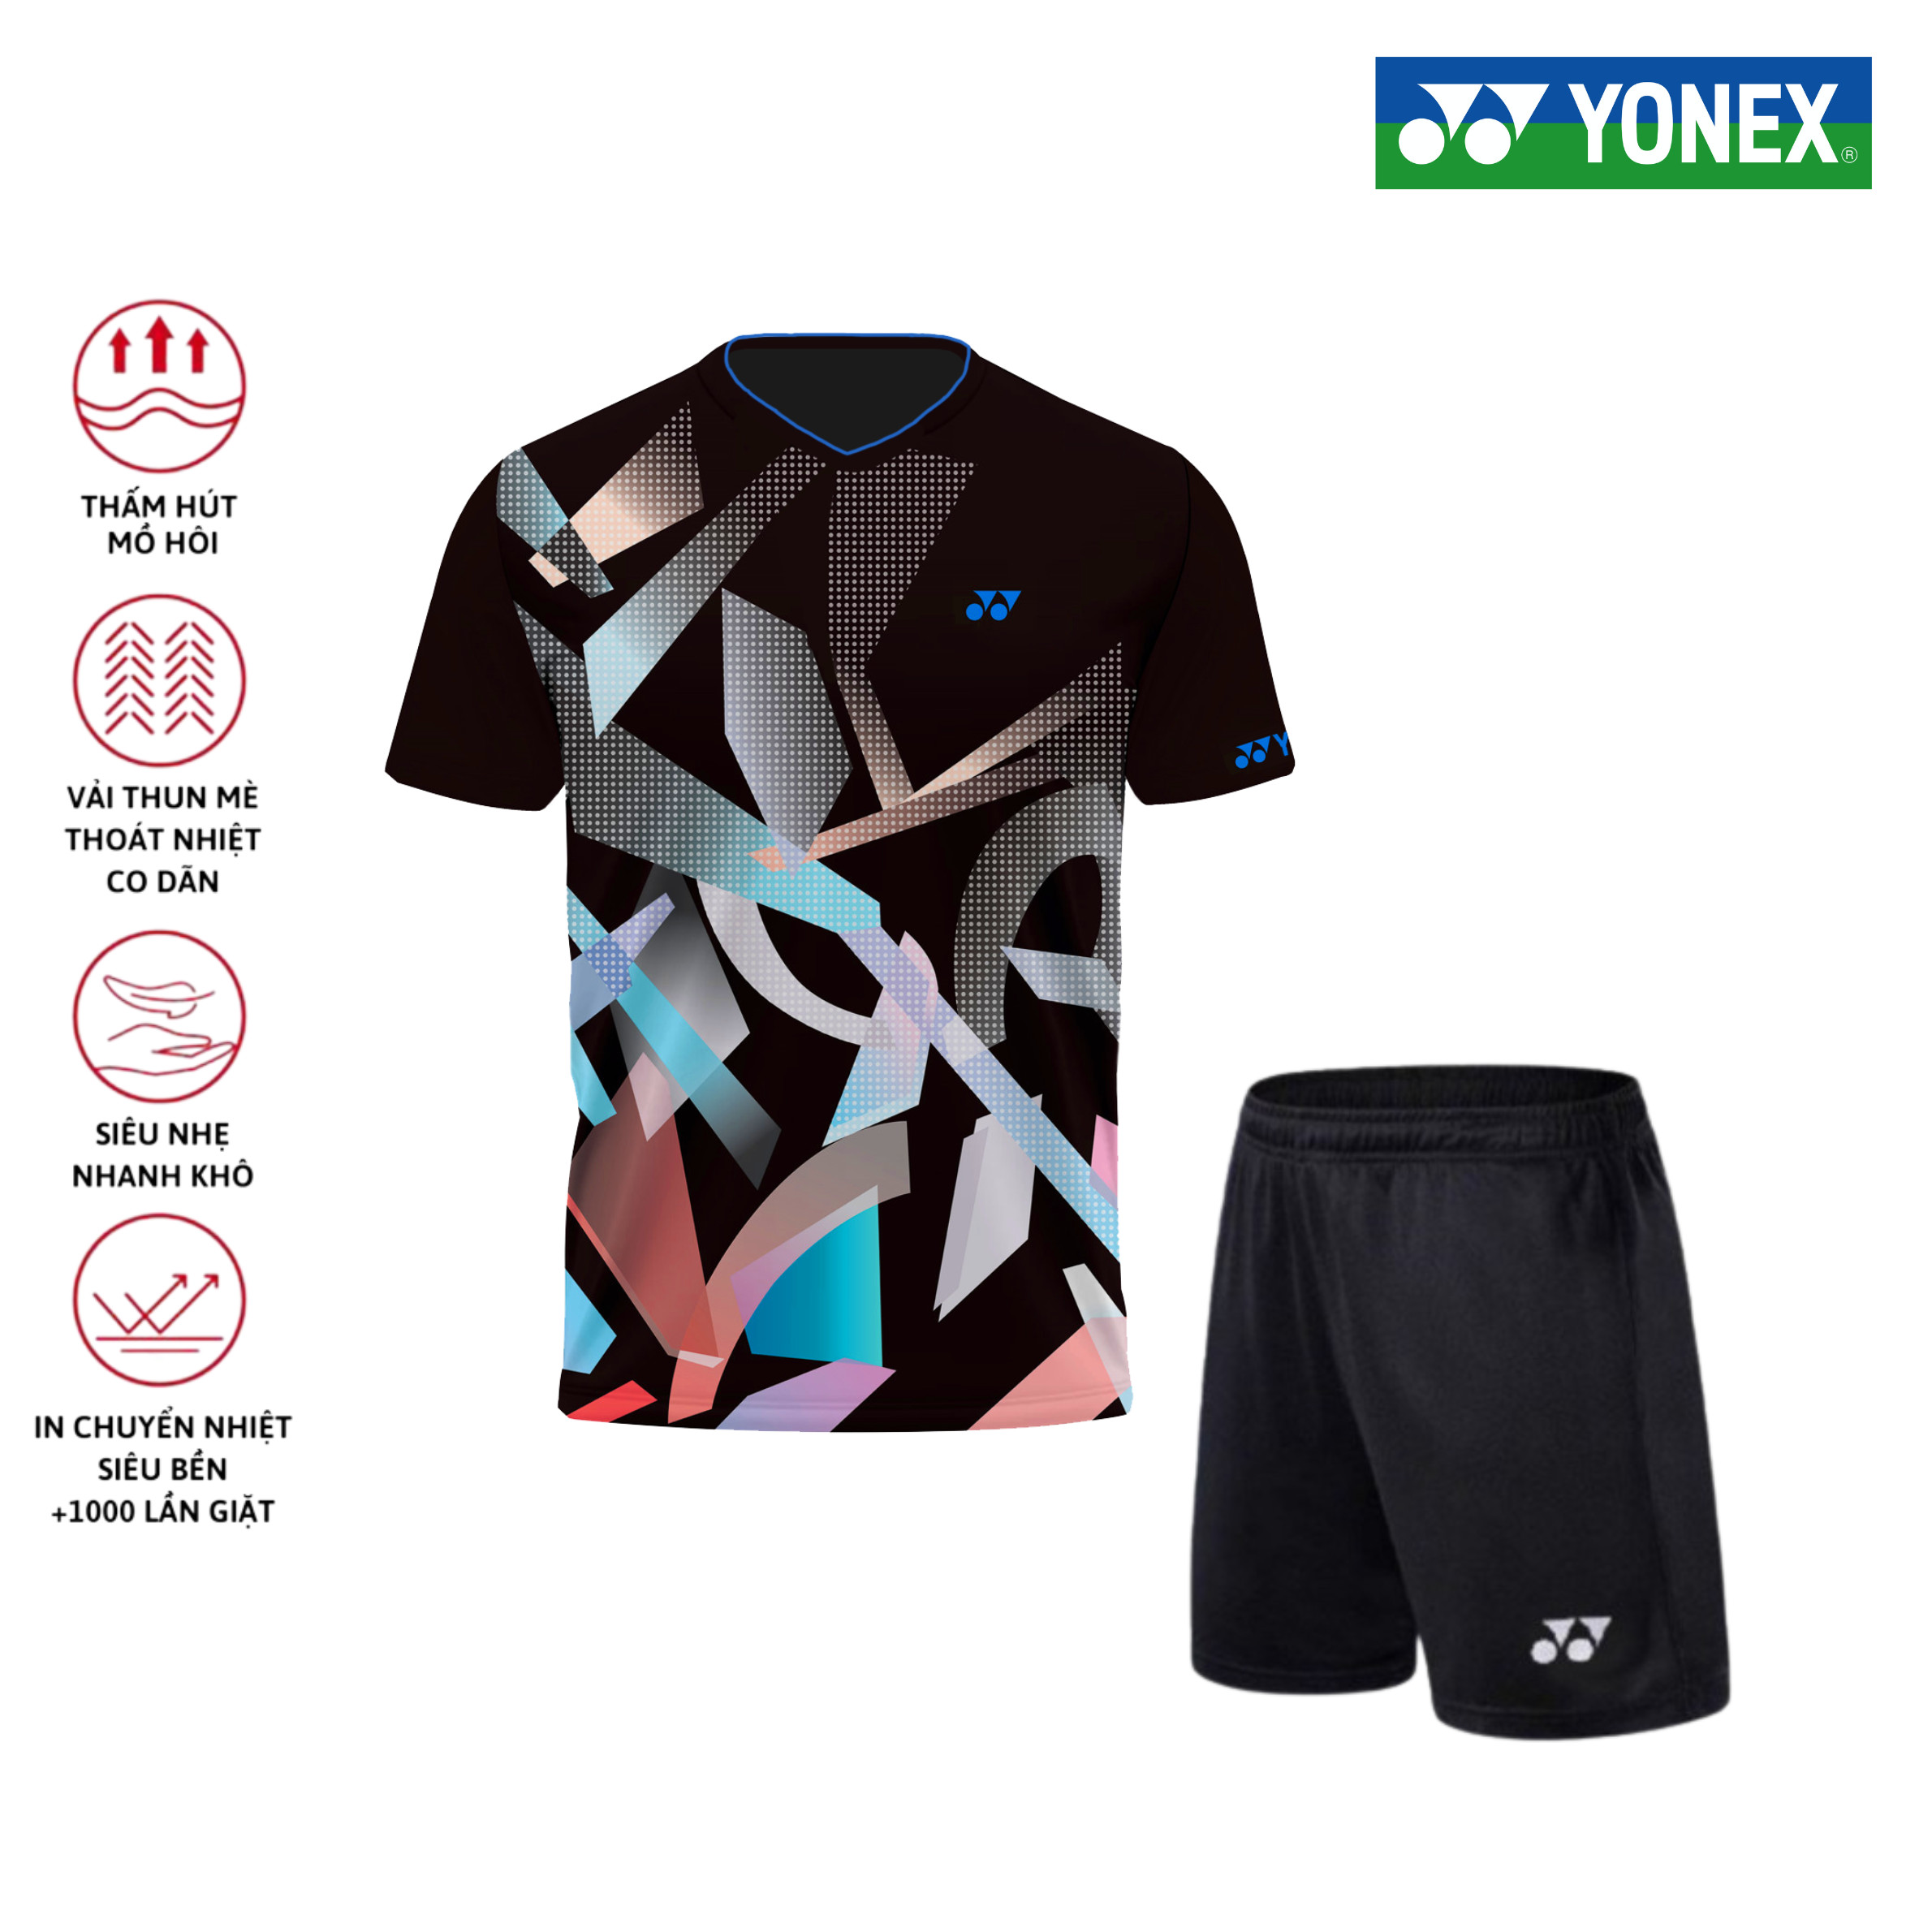 Áo cầu lông, quần cầu lông Yonex chuyên nghiệp mới nhất sử dụng tập luyện và thi đấu cầu lông A541